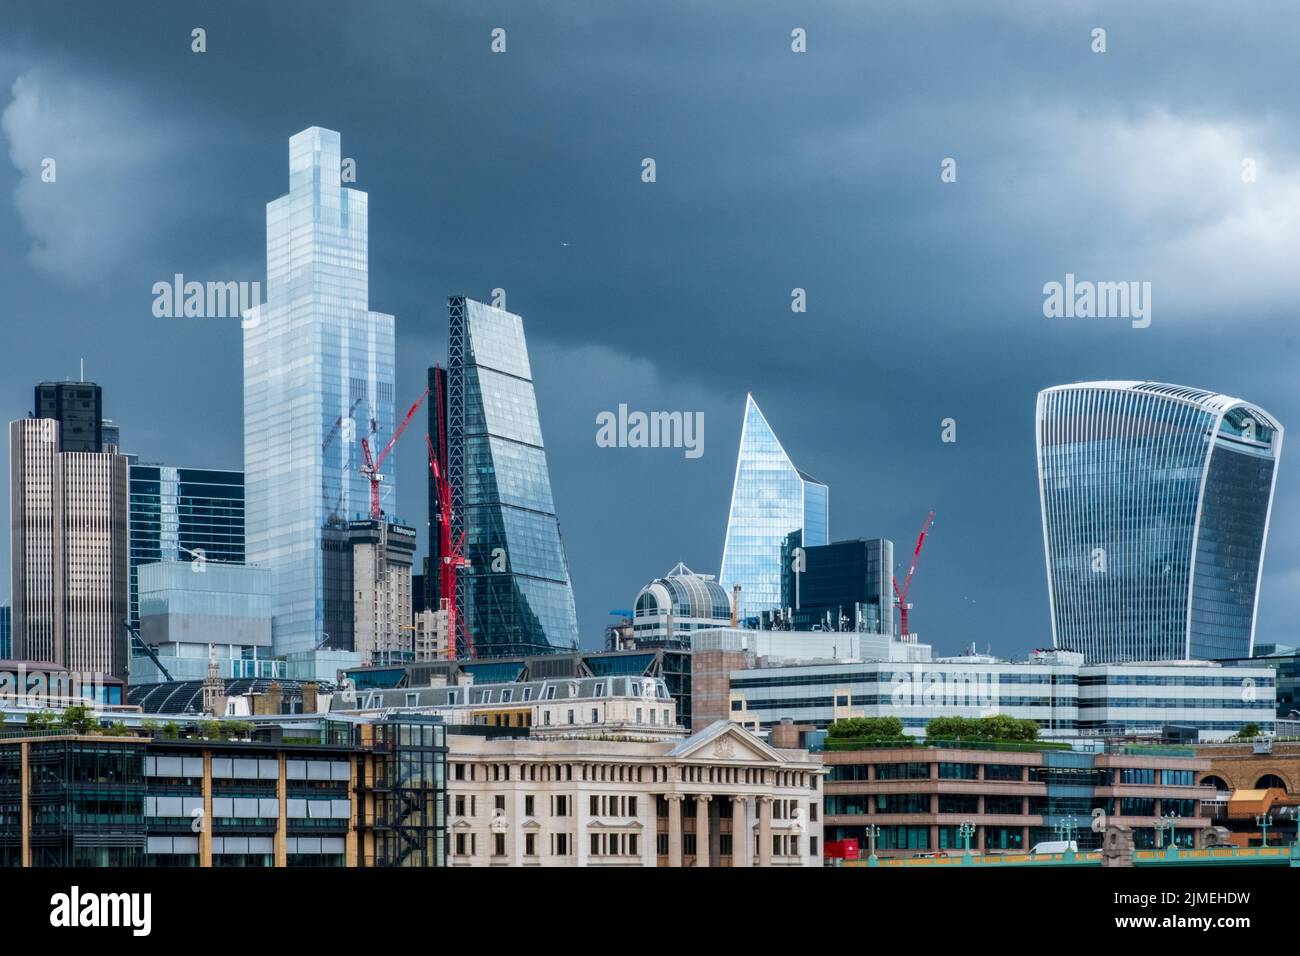 Geschäftsviertel der Stadt London glänzende Wolkenkratzer vor einem dramatischen, stürmischen Himmel. Stockfoto